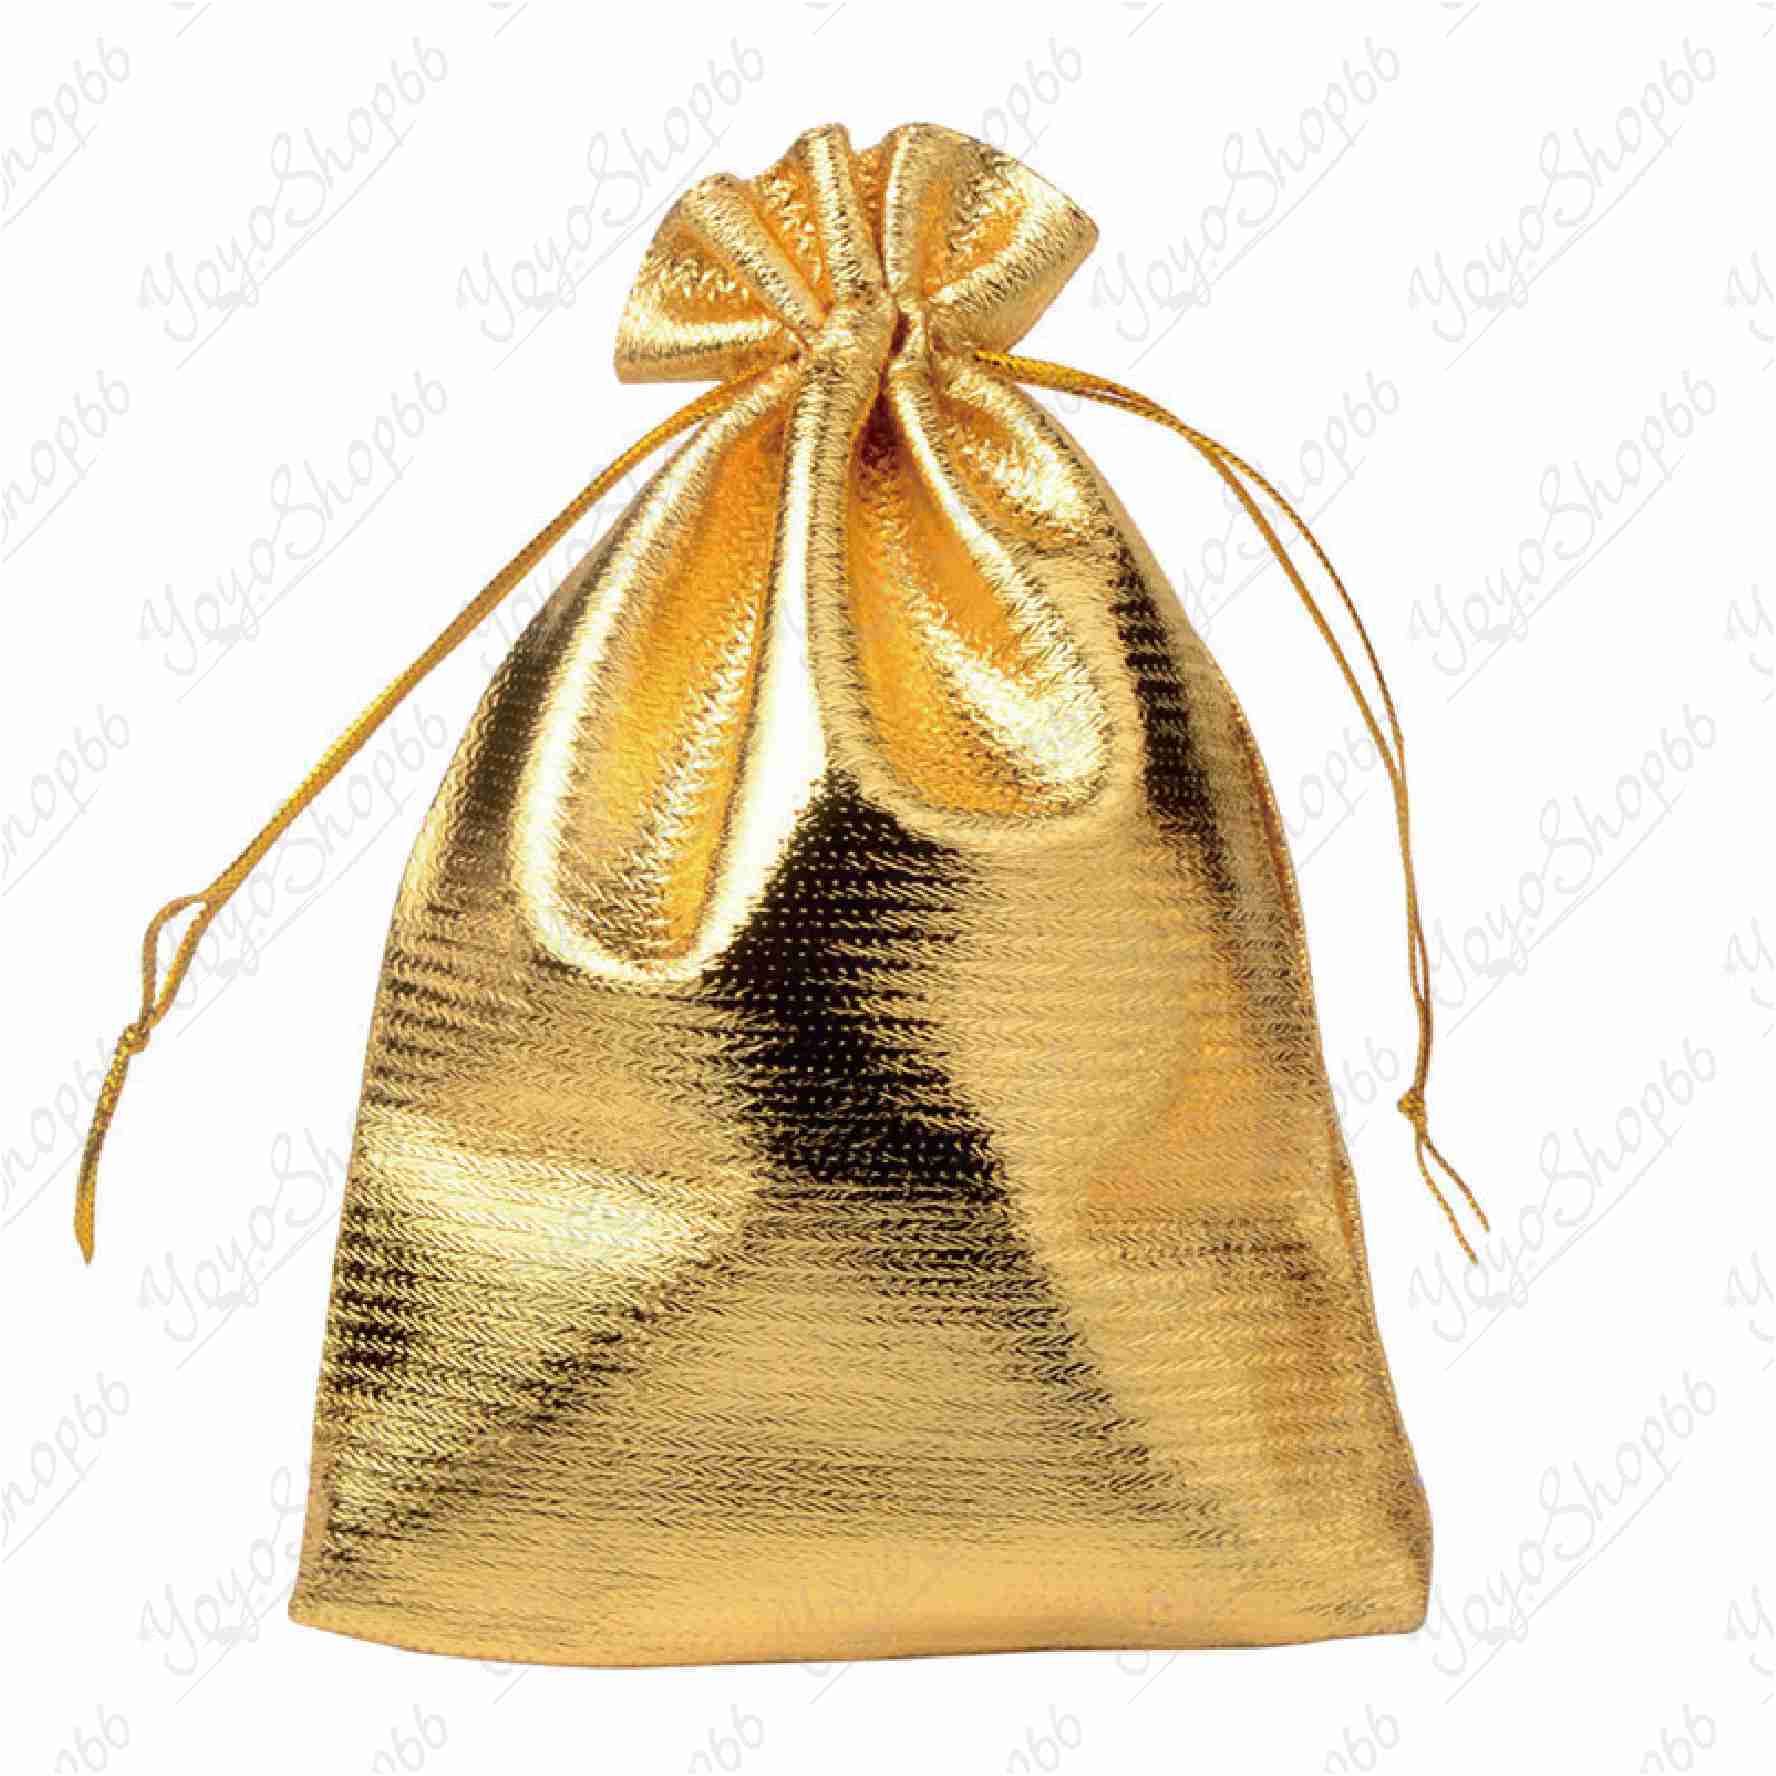 #631【大號13*18CM(1入) 】首飾包裝袋(1入) 金銀布袋 束口抽繩袋 高檔首飾袋 金袋 禮品袋【愛尚生活】